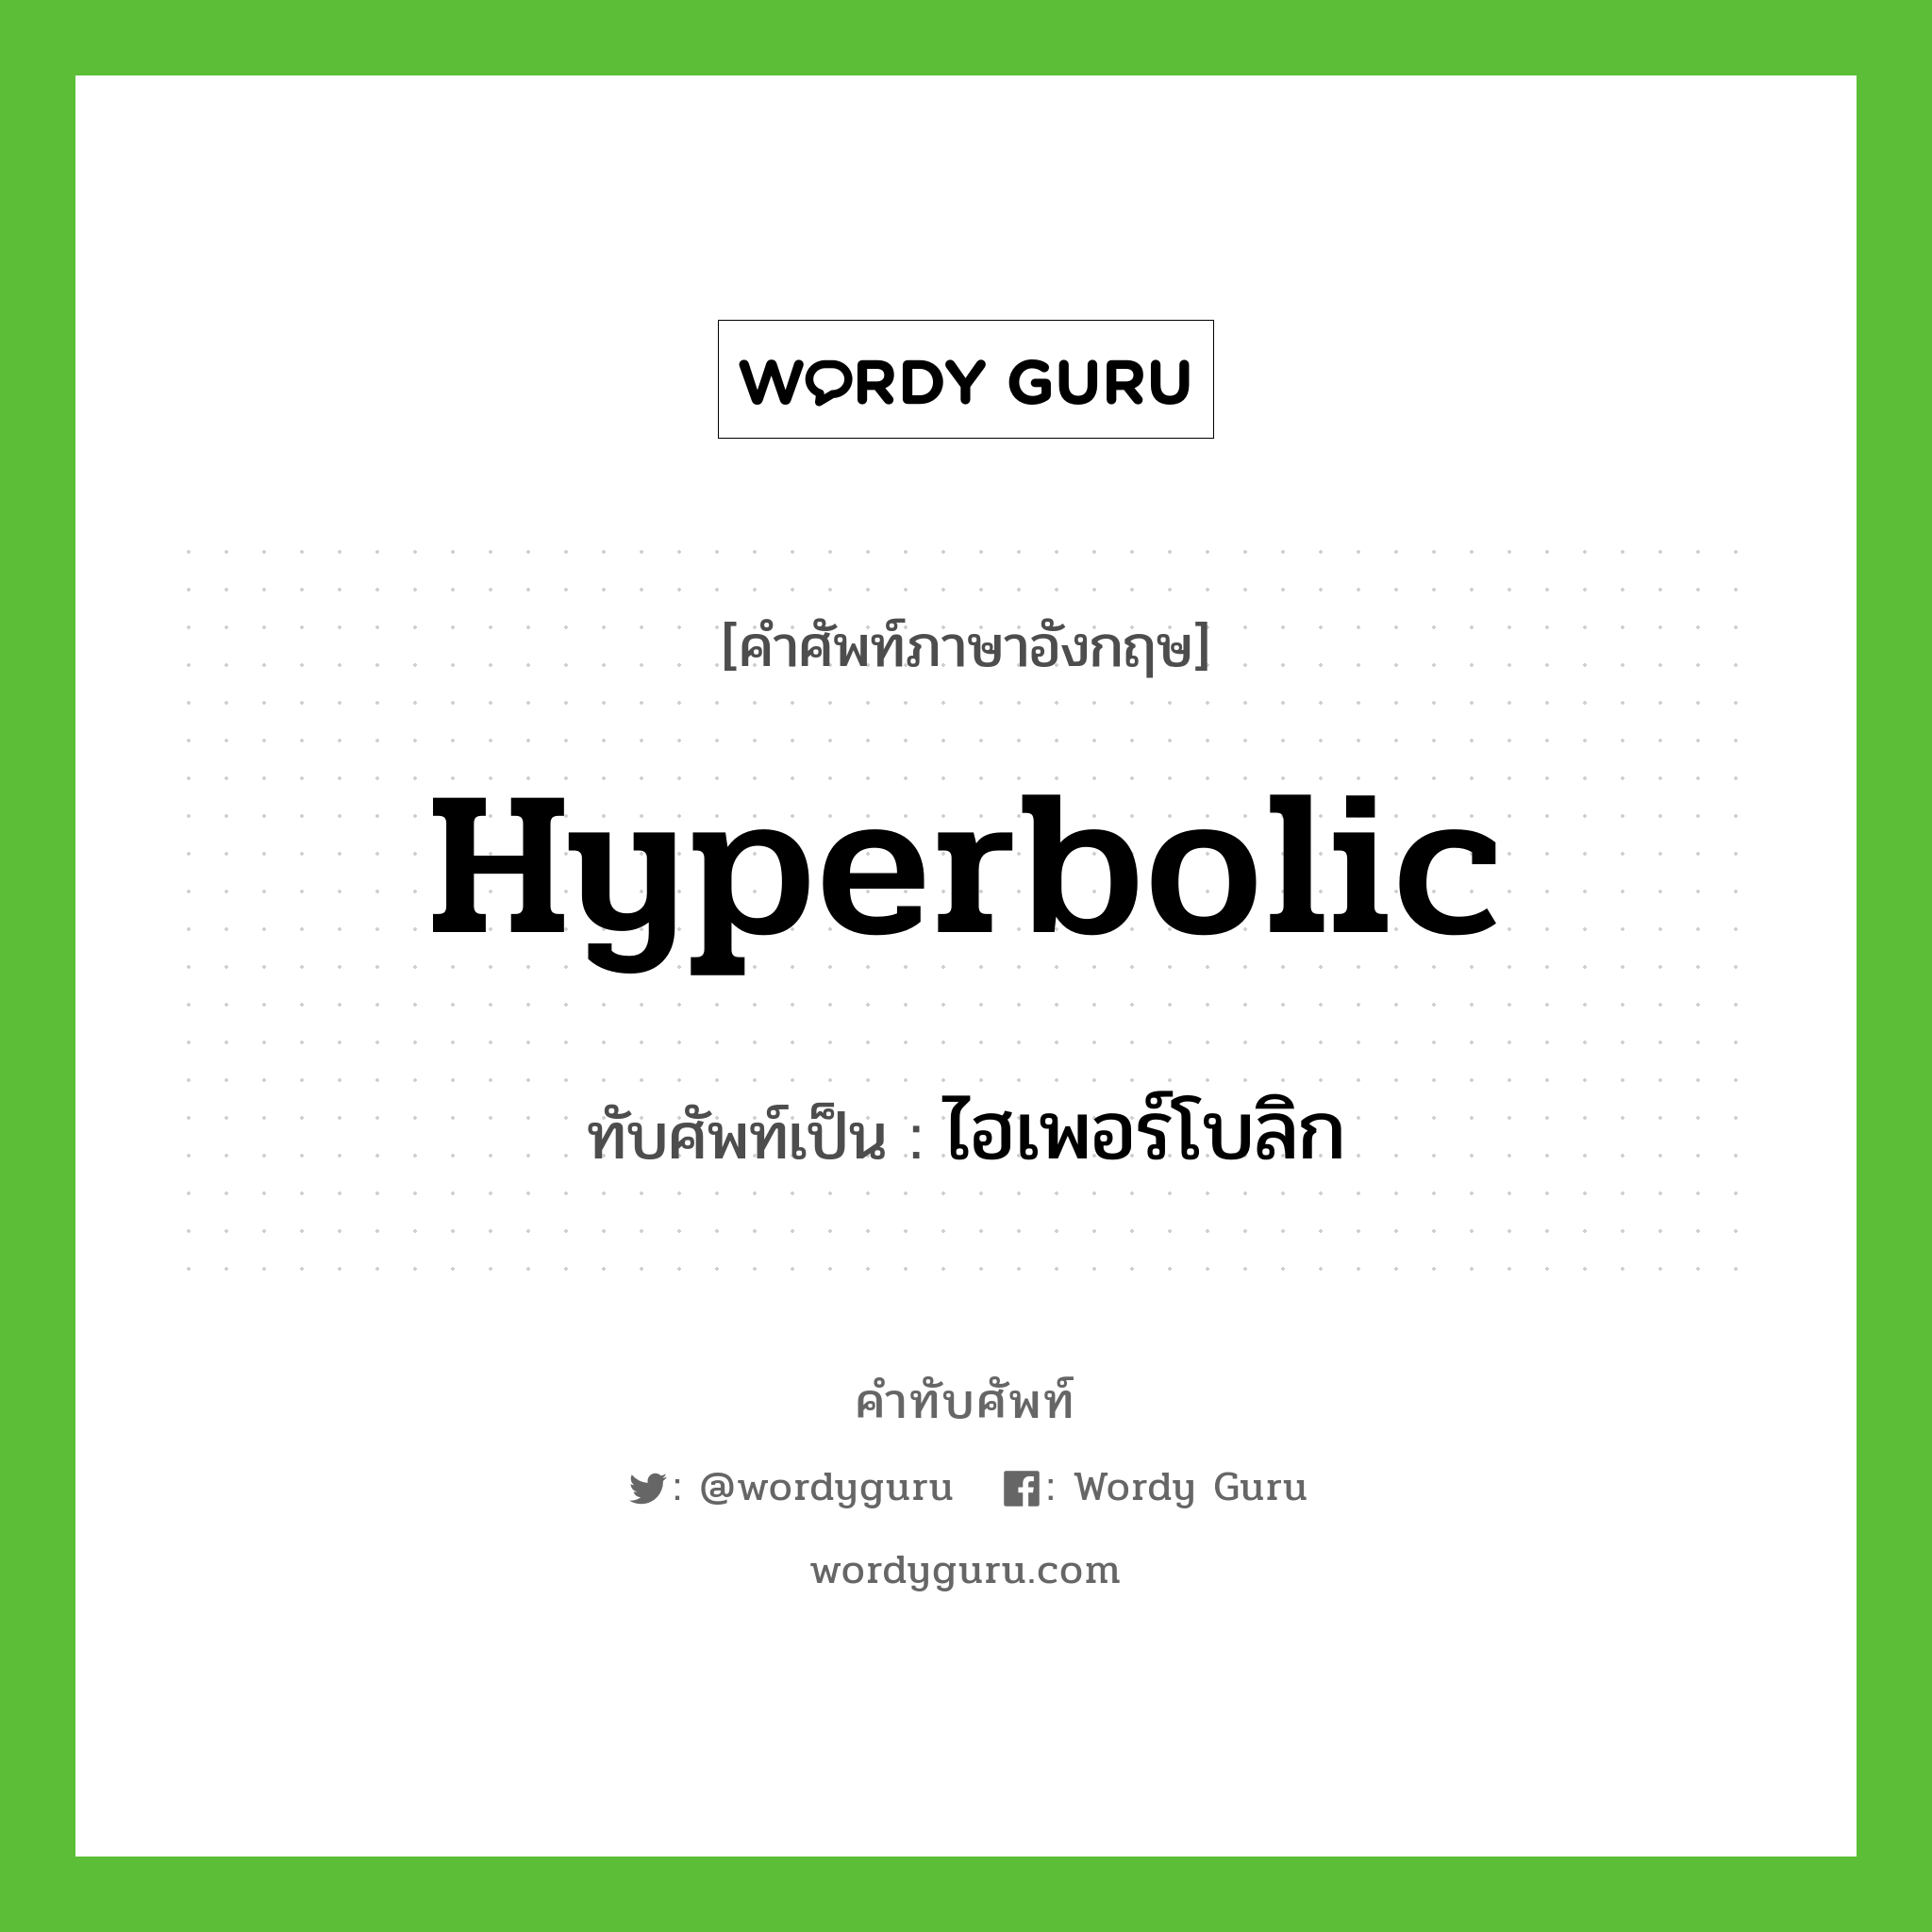 ไฮเพอร์โบลิก เขียนอย่างไร?, คำศัพท์ภาษาอังกฤษ ไฮเพอร์โบลิก ทับศัพท์เป็น hyperbolic